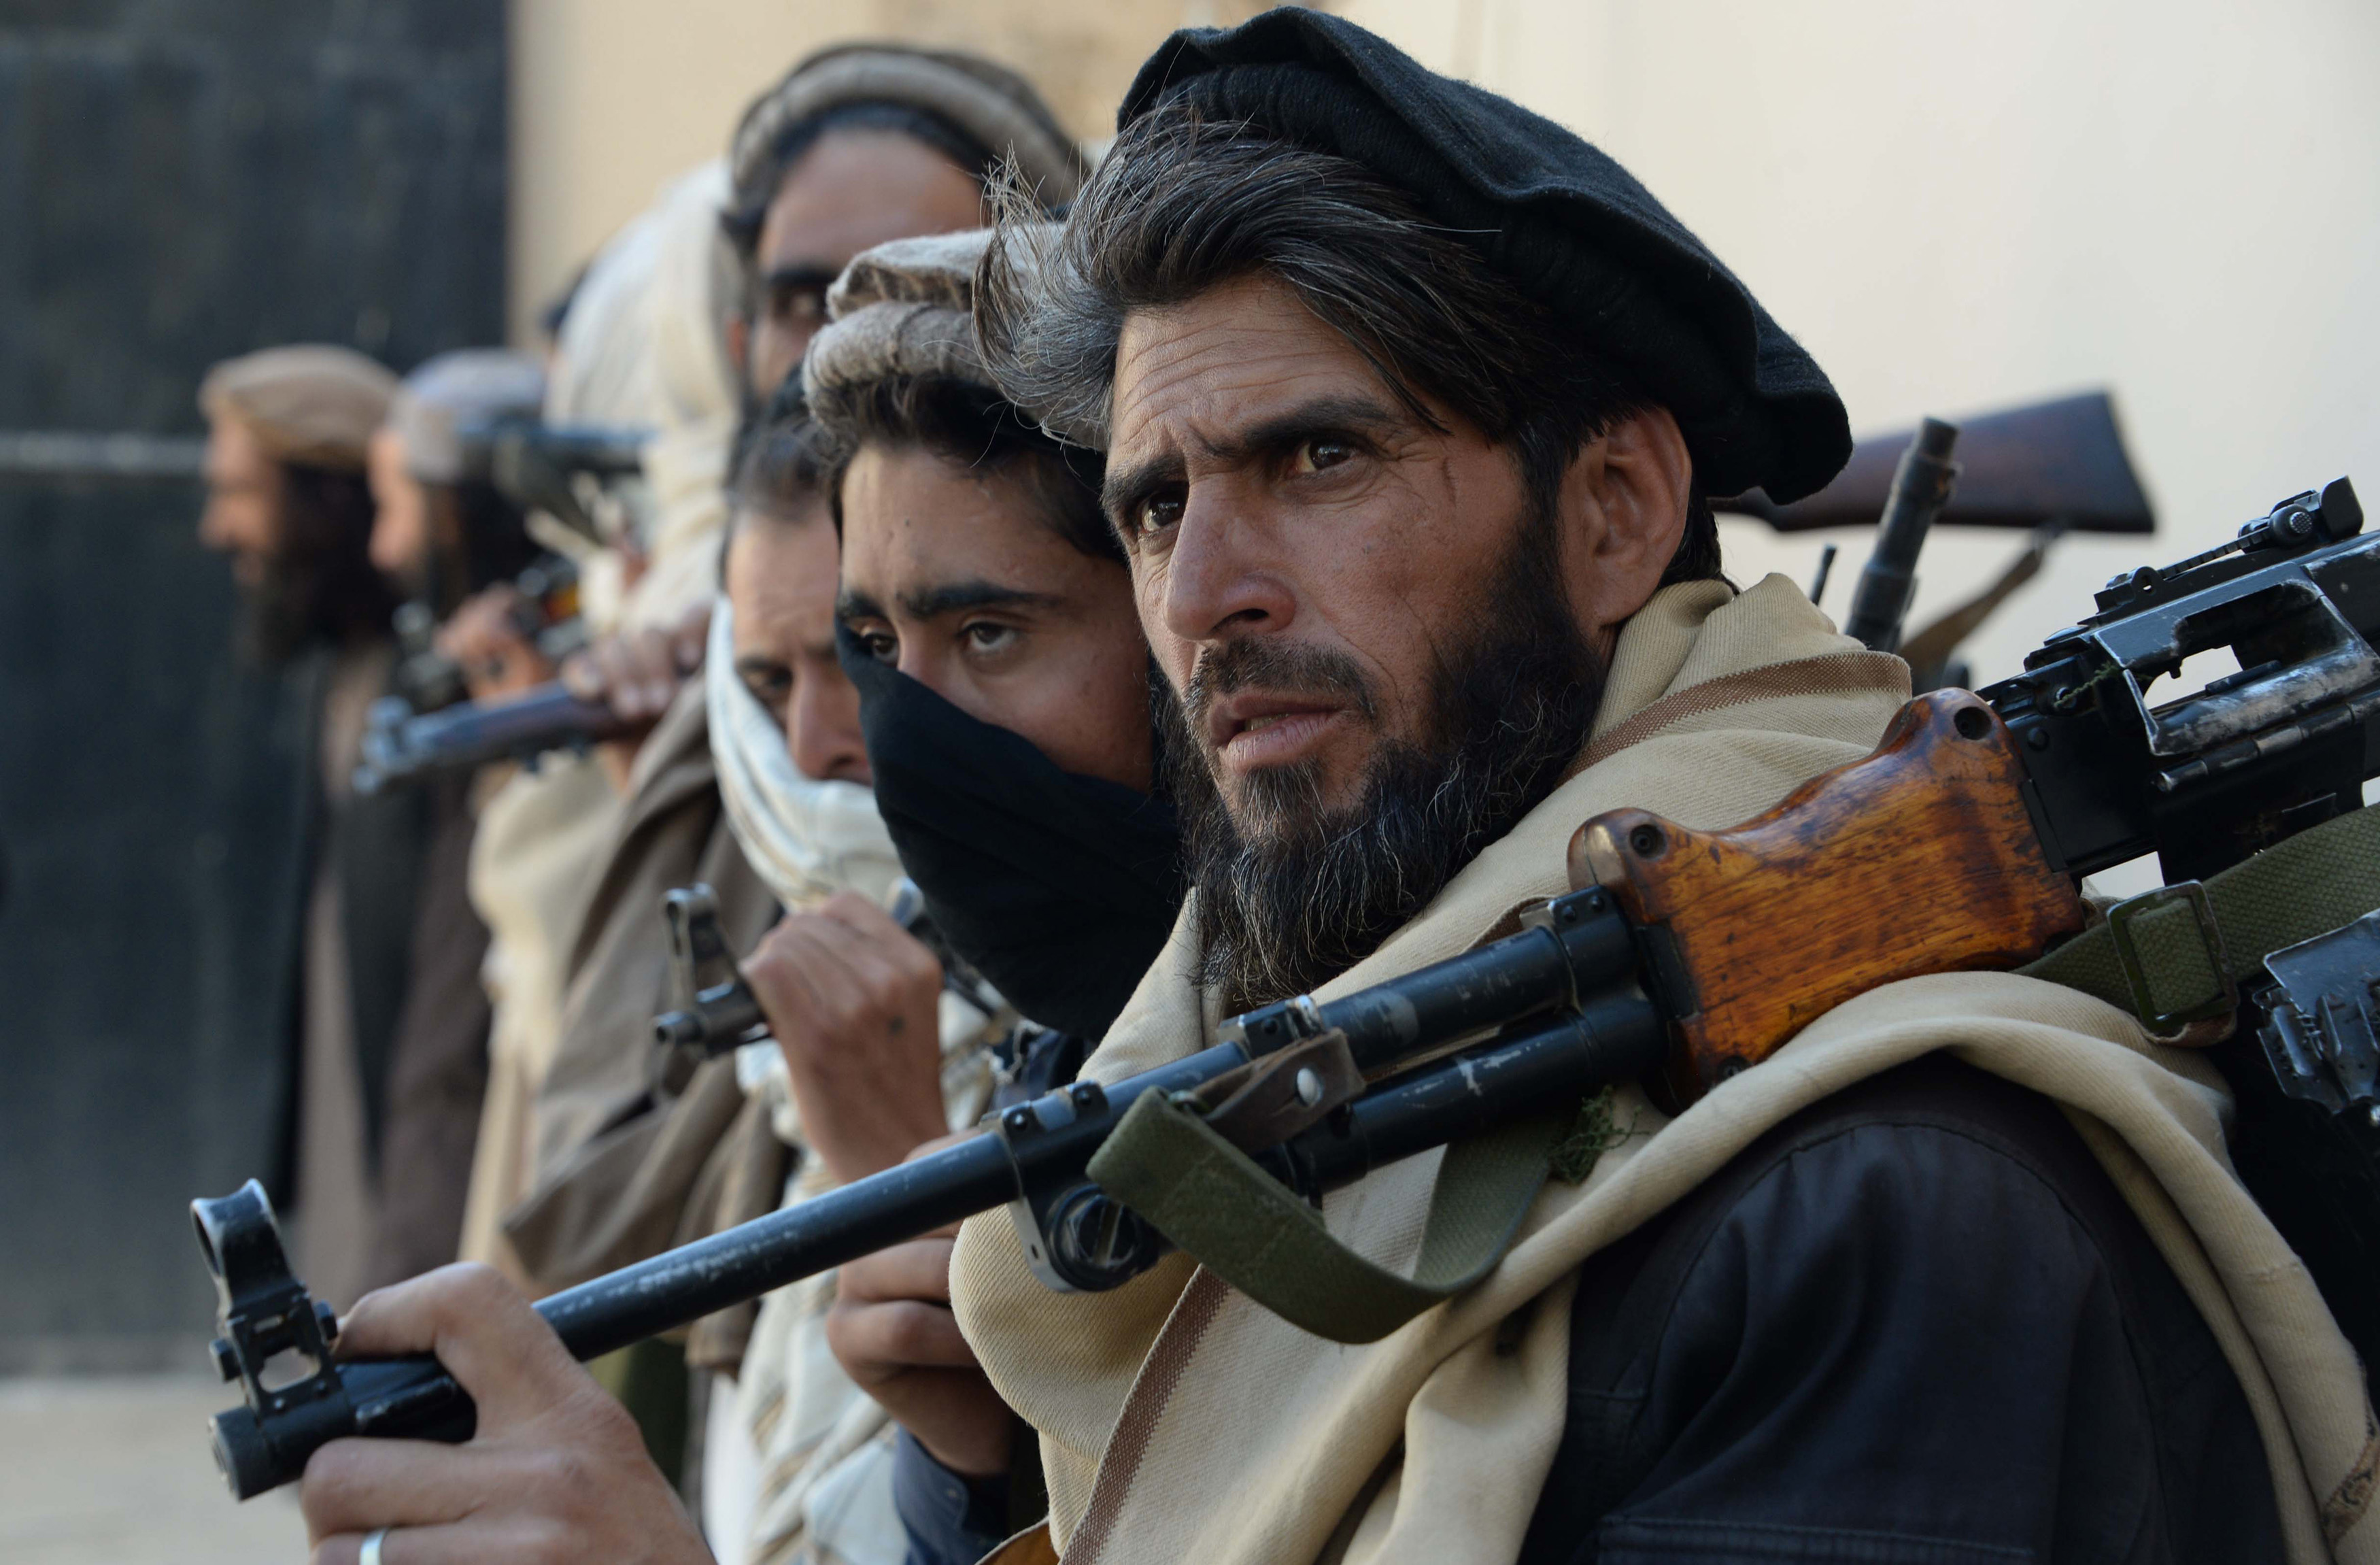 واکنش خشمگین دولت افغانستان به حمایت ایران از گروه طالبان